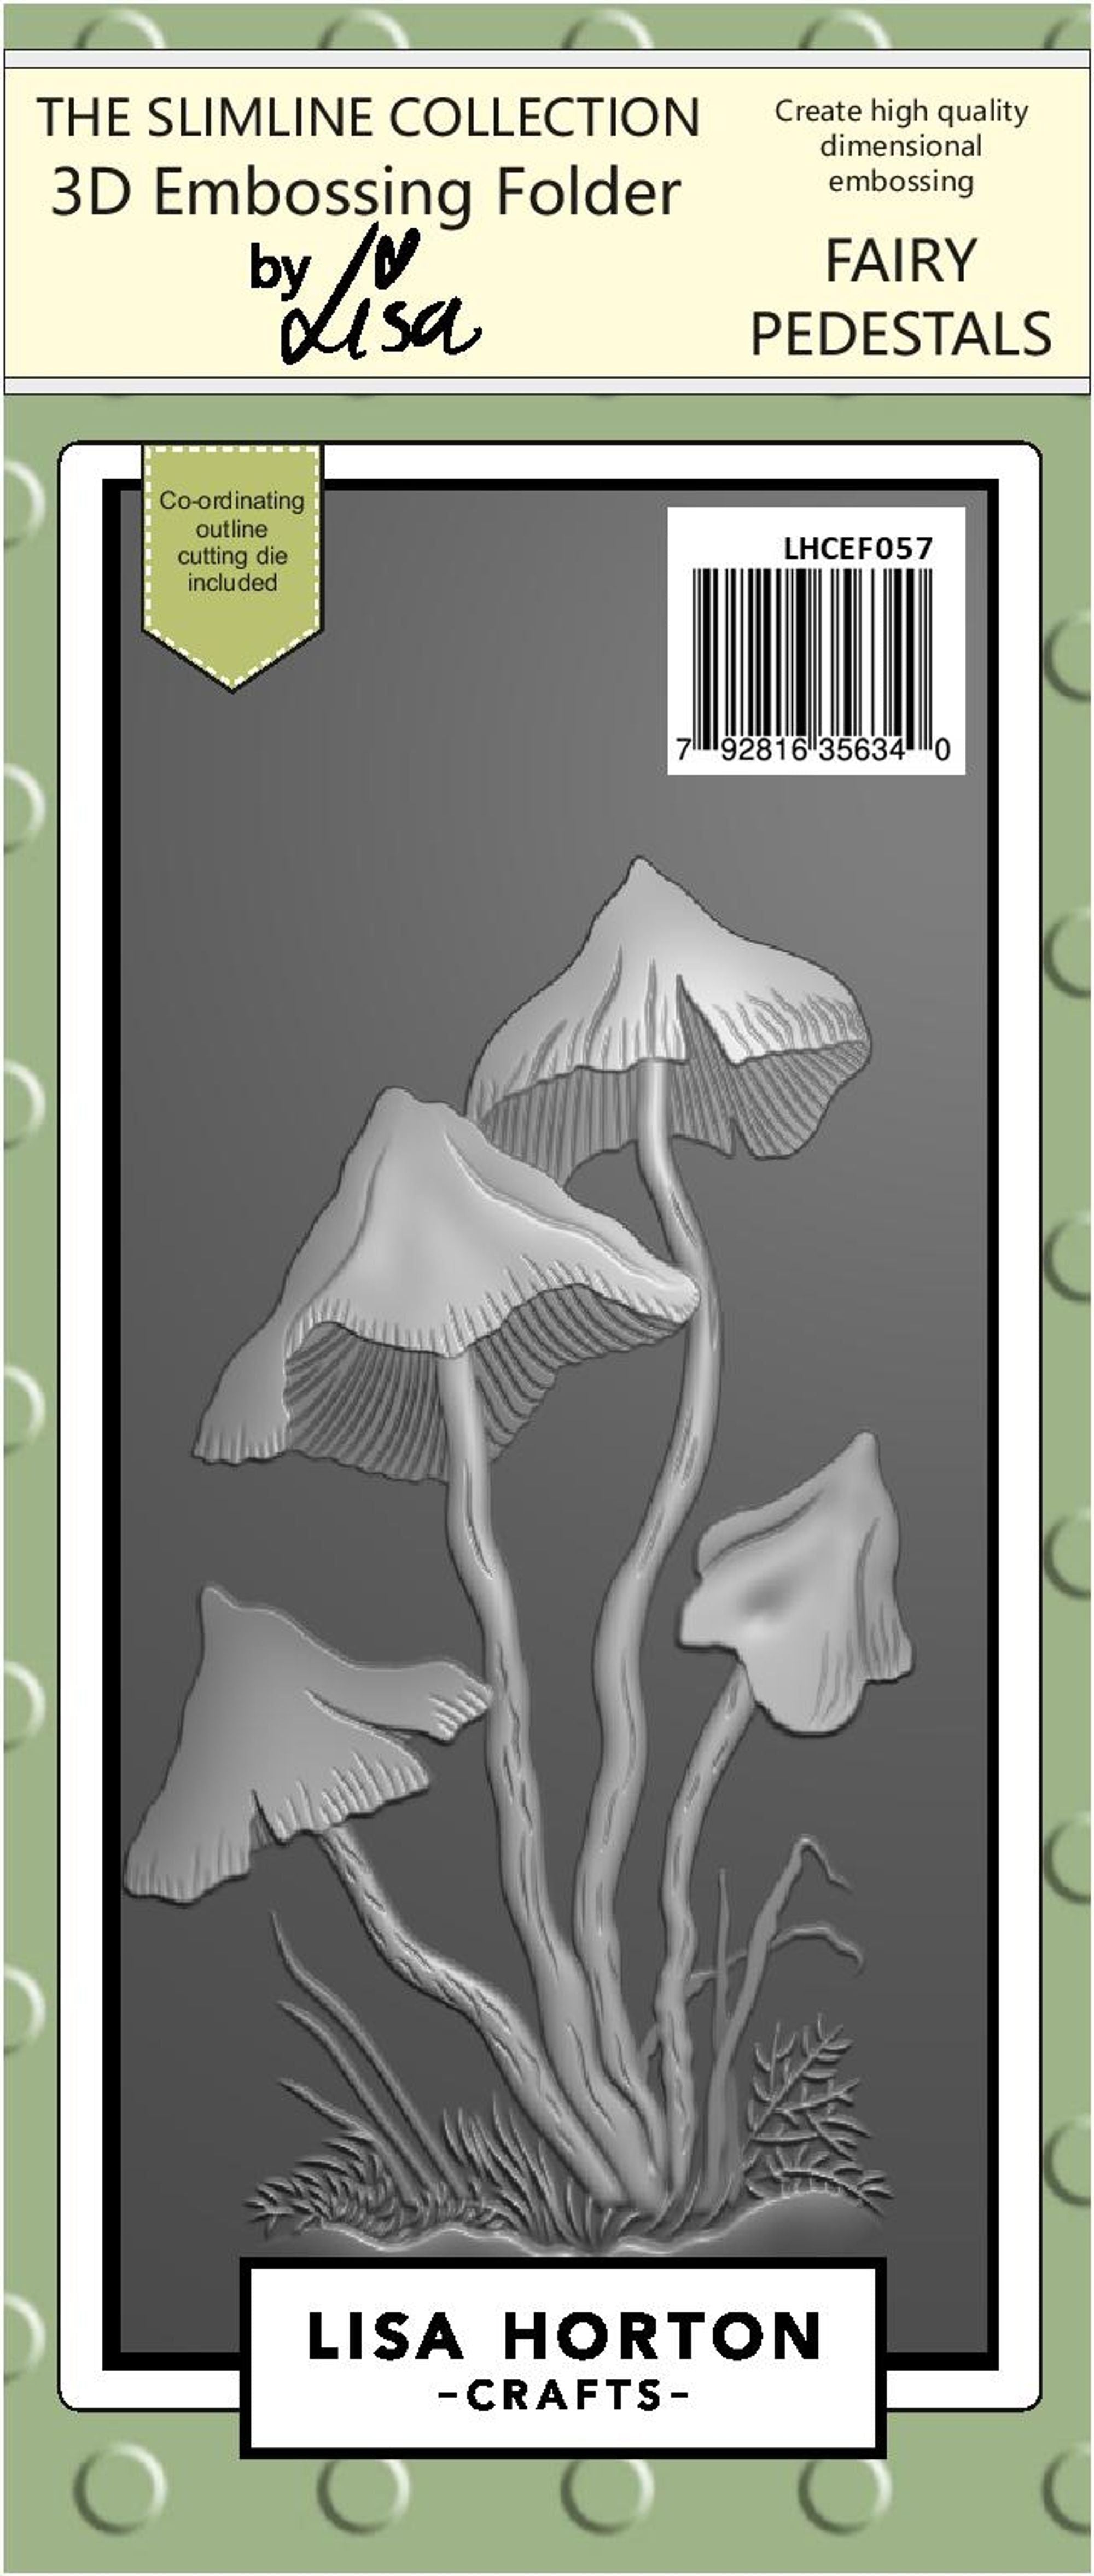 Fairy Pedestals 3D Slimline Embossing Folder With Cutting Die